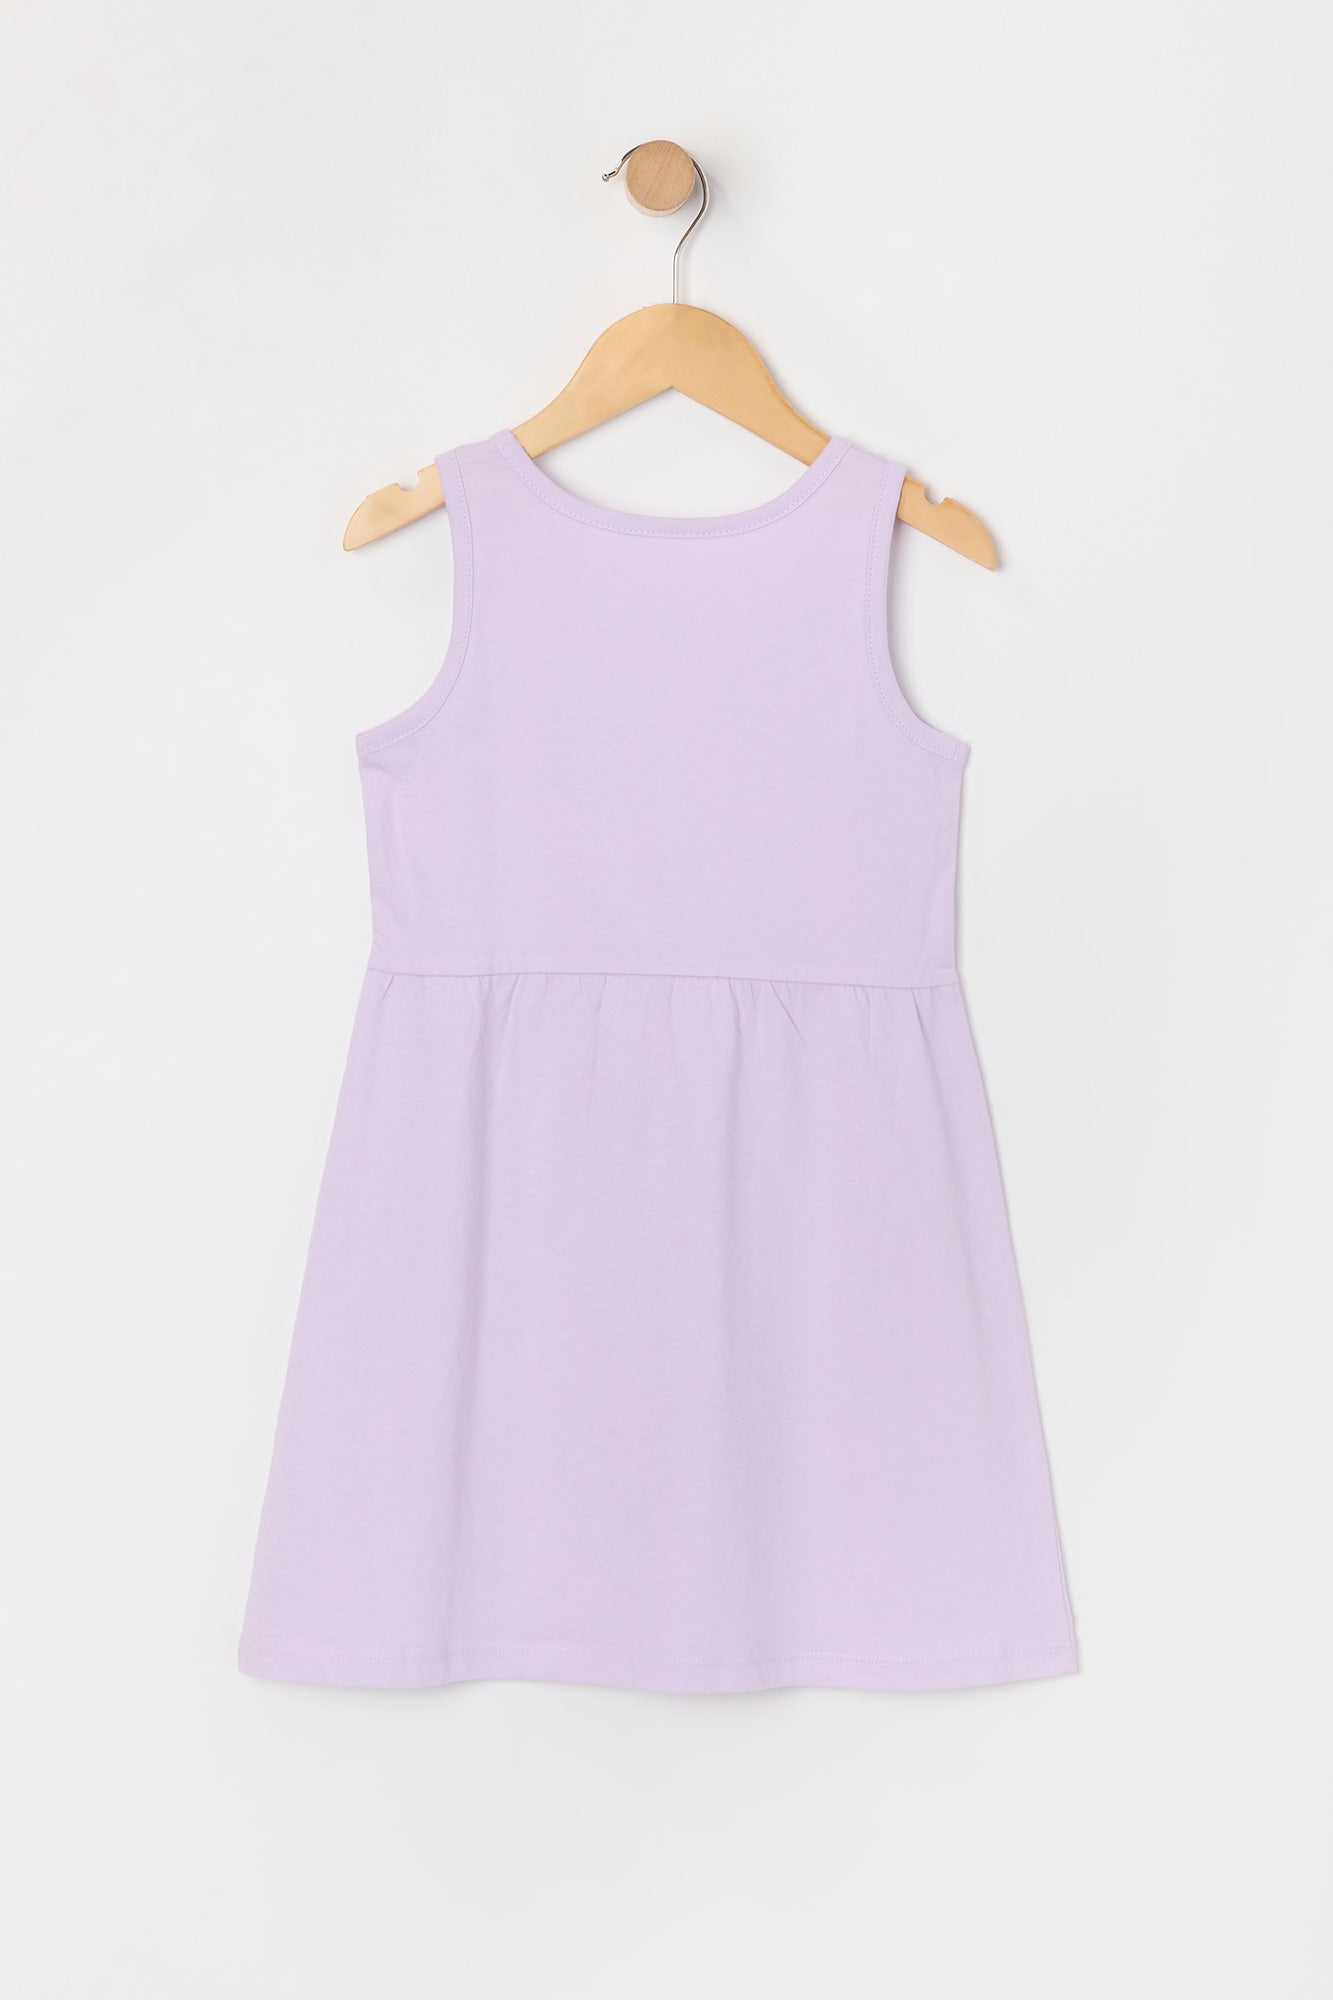 Toddler Girl Solid Sleeveless Dress